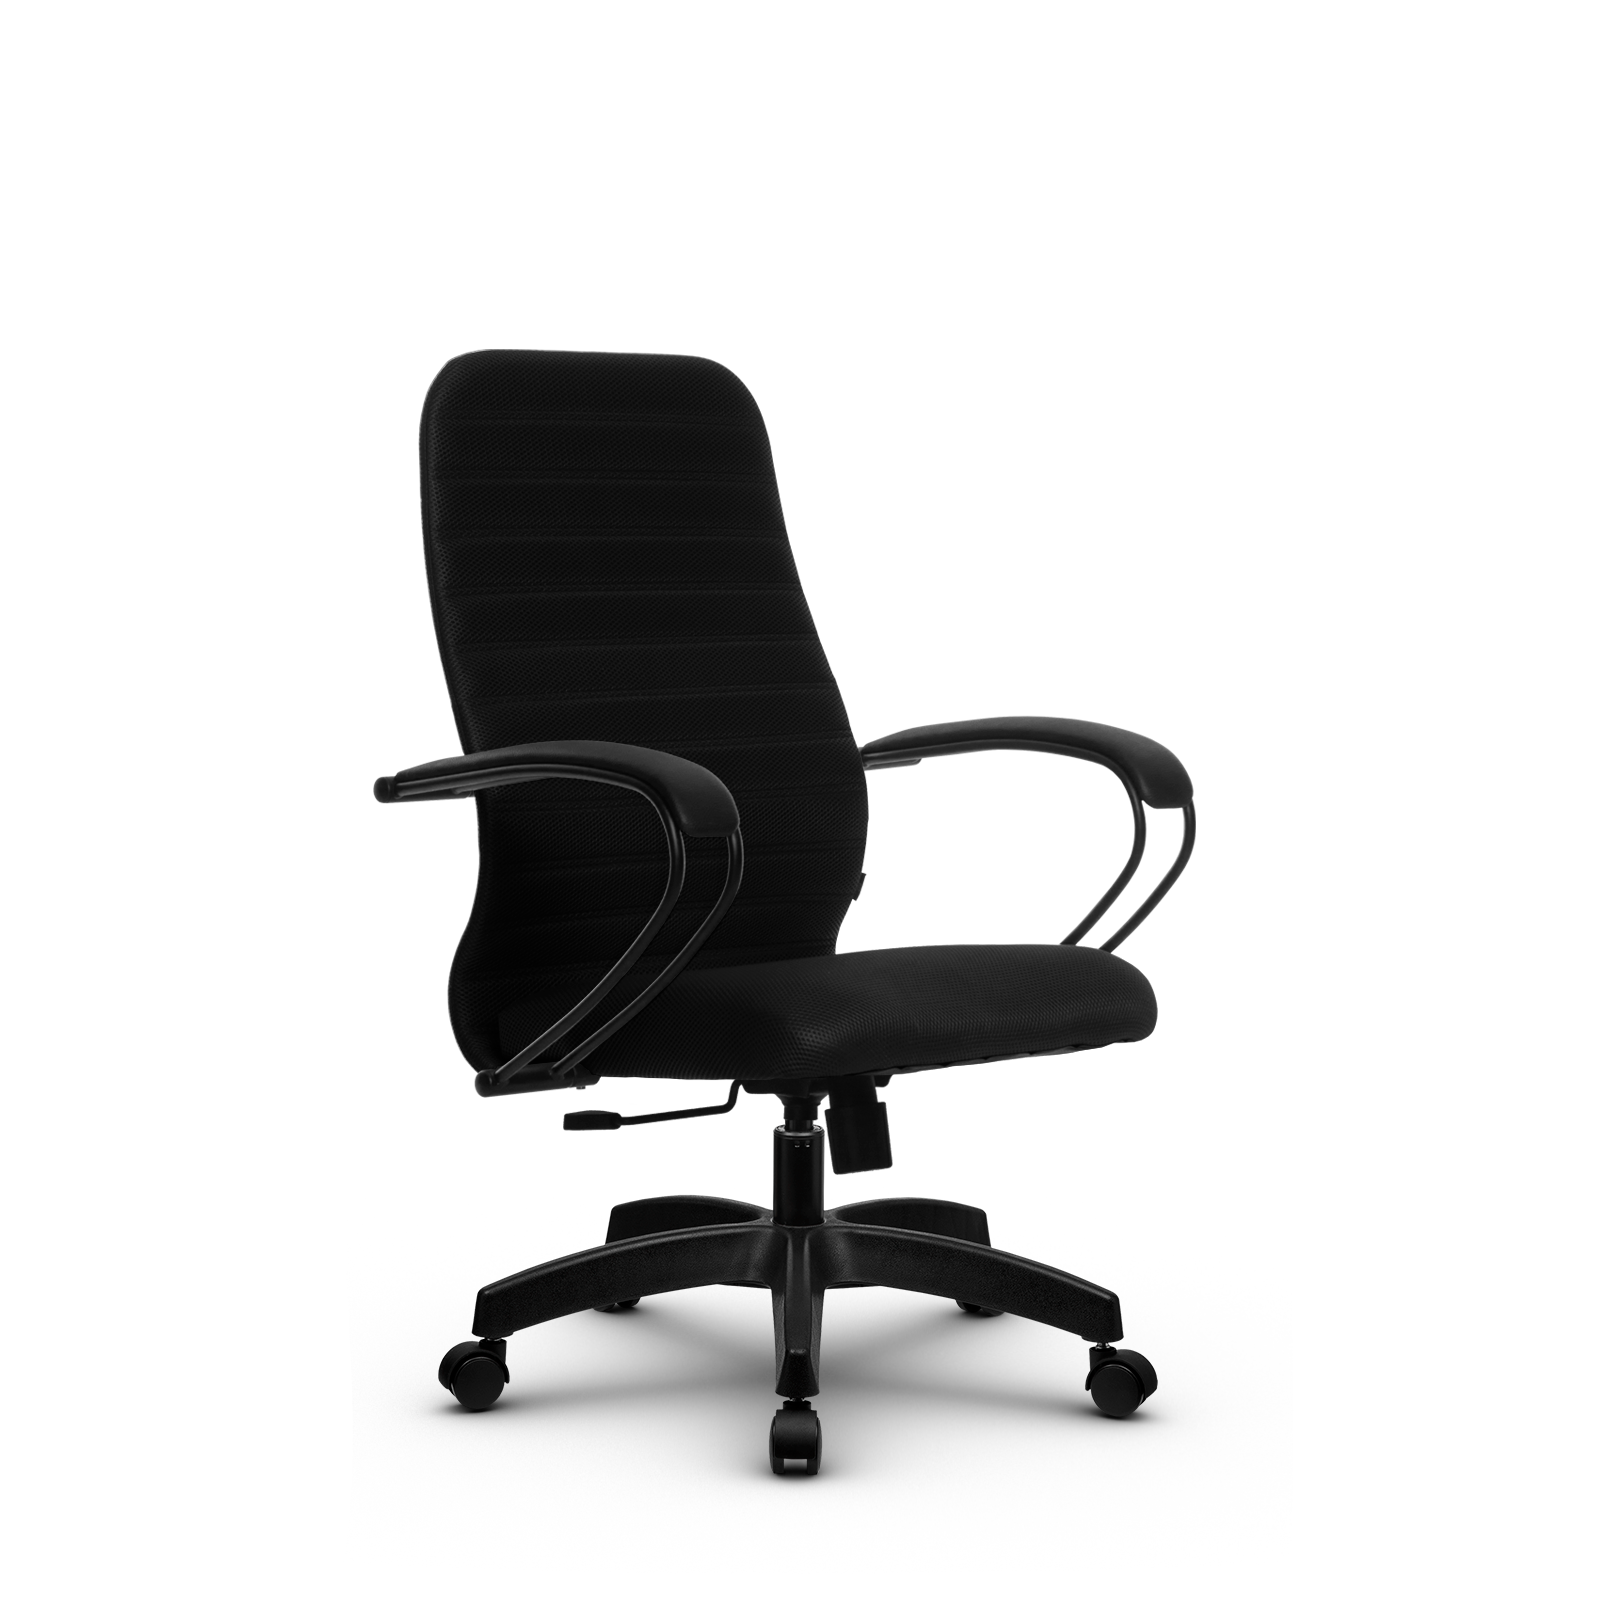 90488588 Офисное кресло Su z312458022 прочный сетчатый материал цвет черный STLM-0248470 МЕТТА